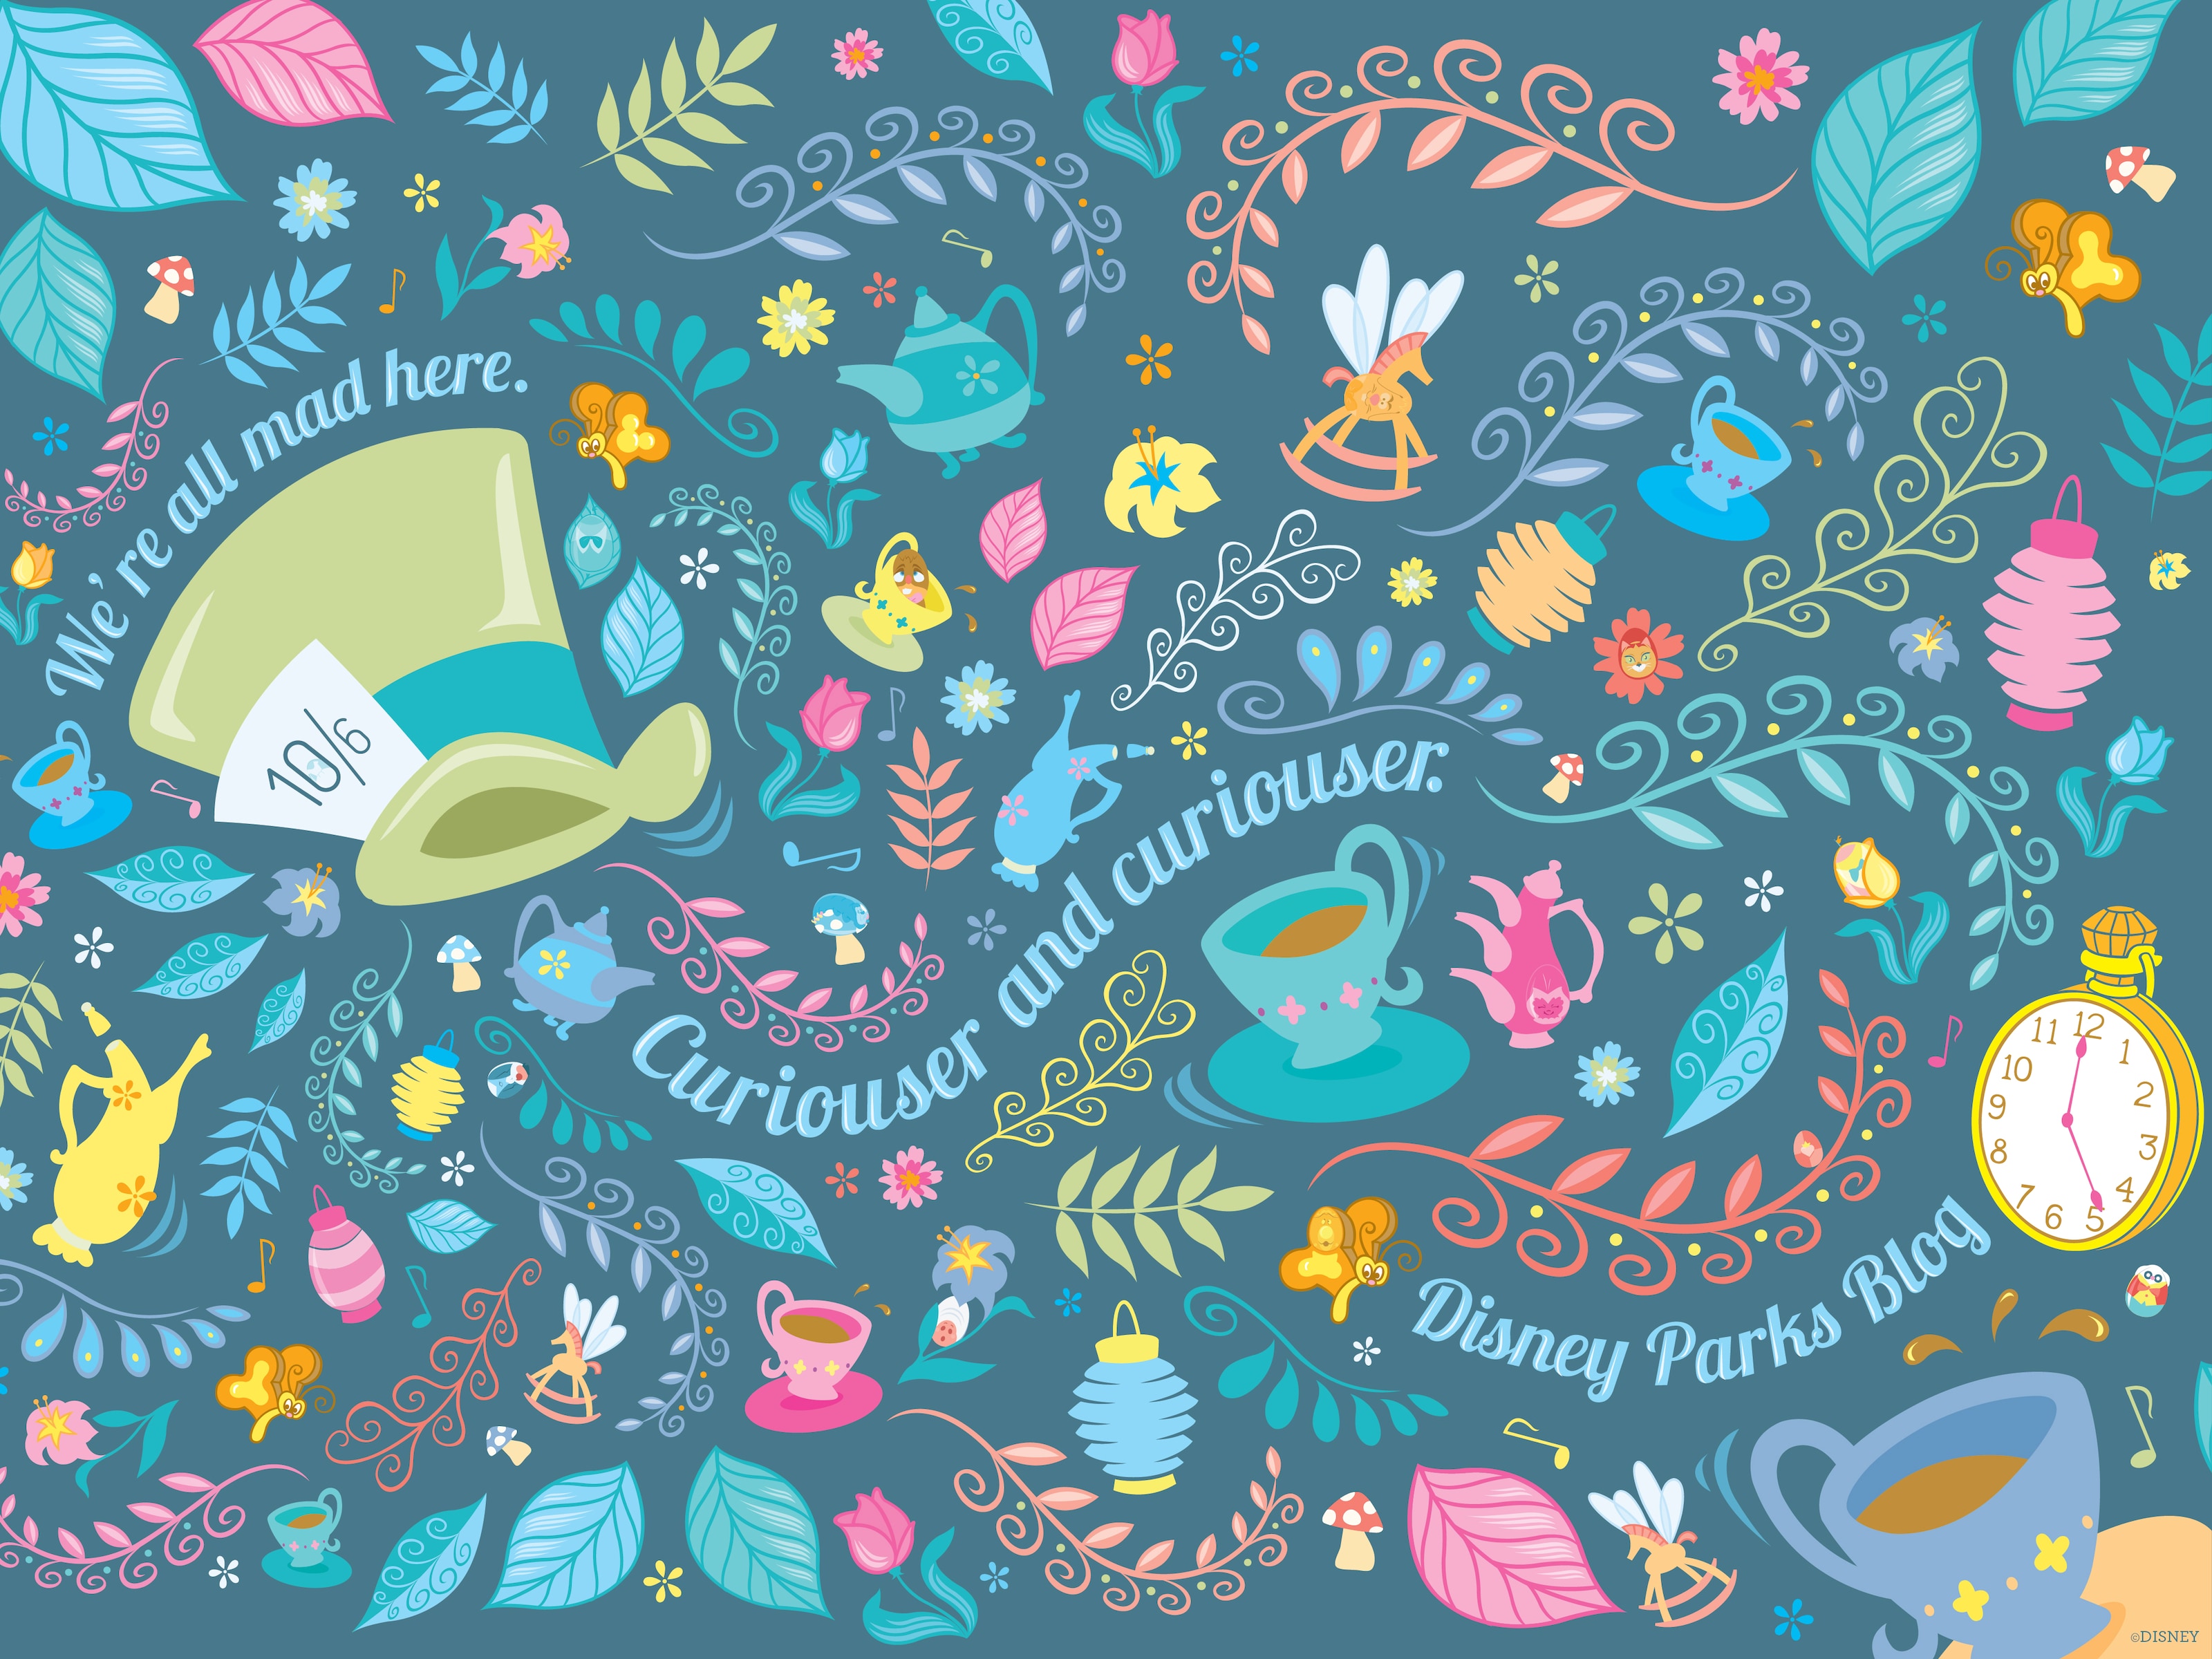 Easter Egg Hunt Wallpaper – Desktop | Disney Parks Blog